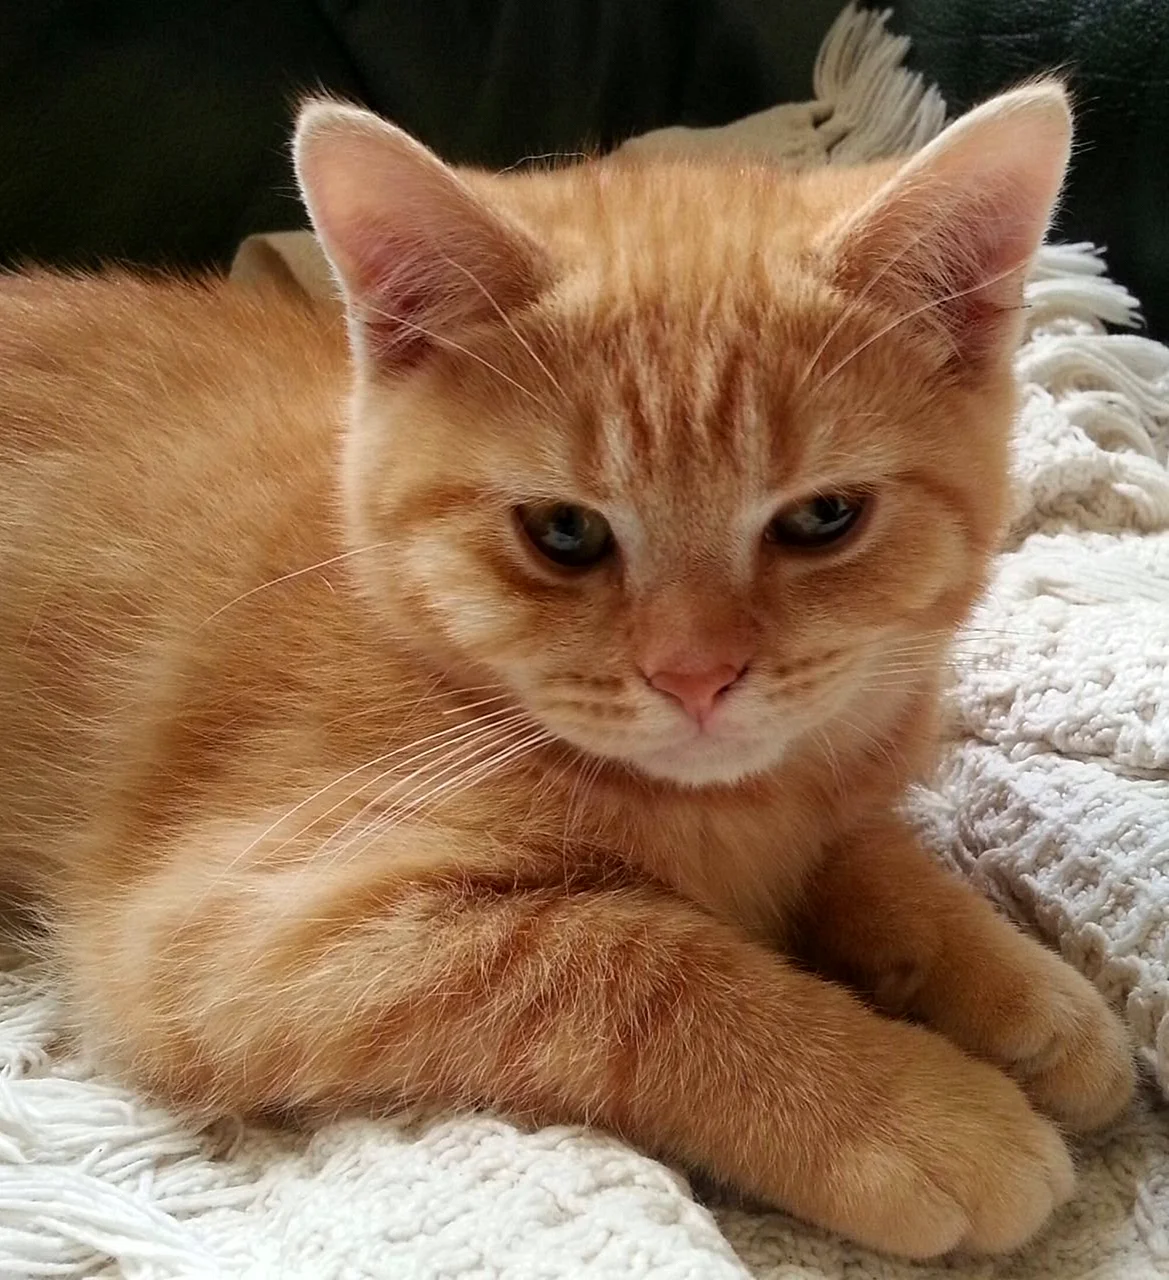 American Shorthair кошка рыжая